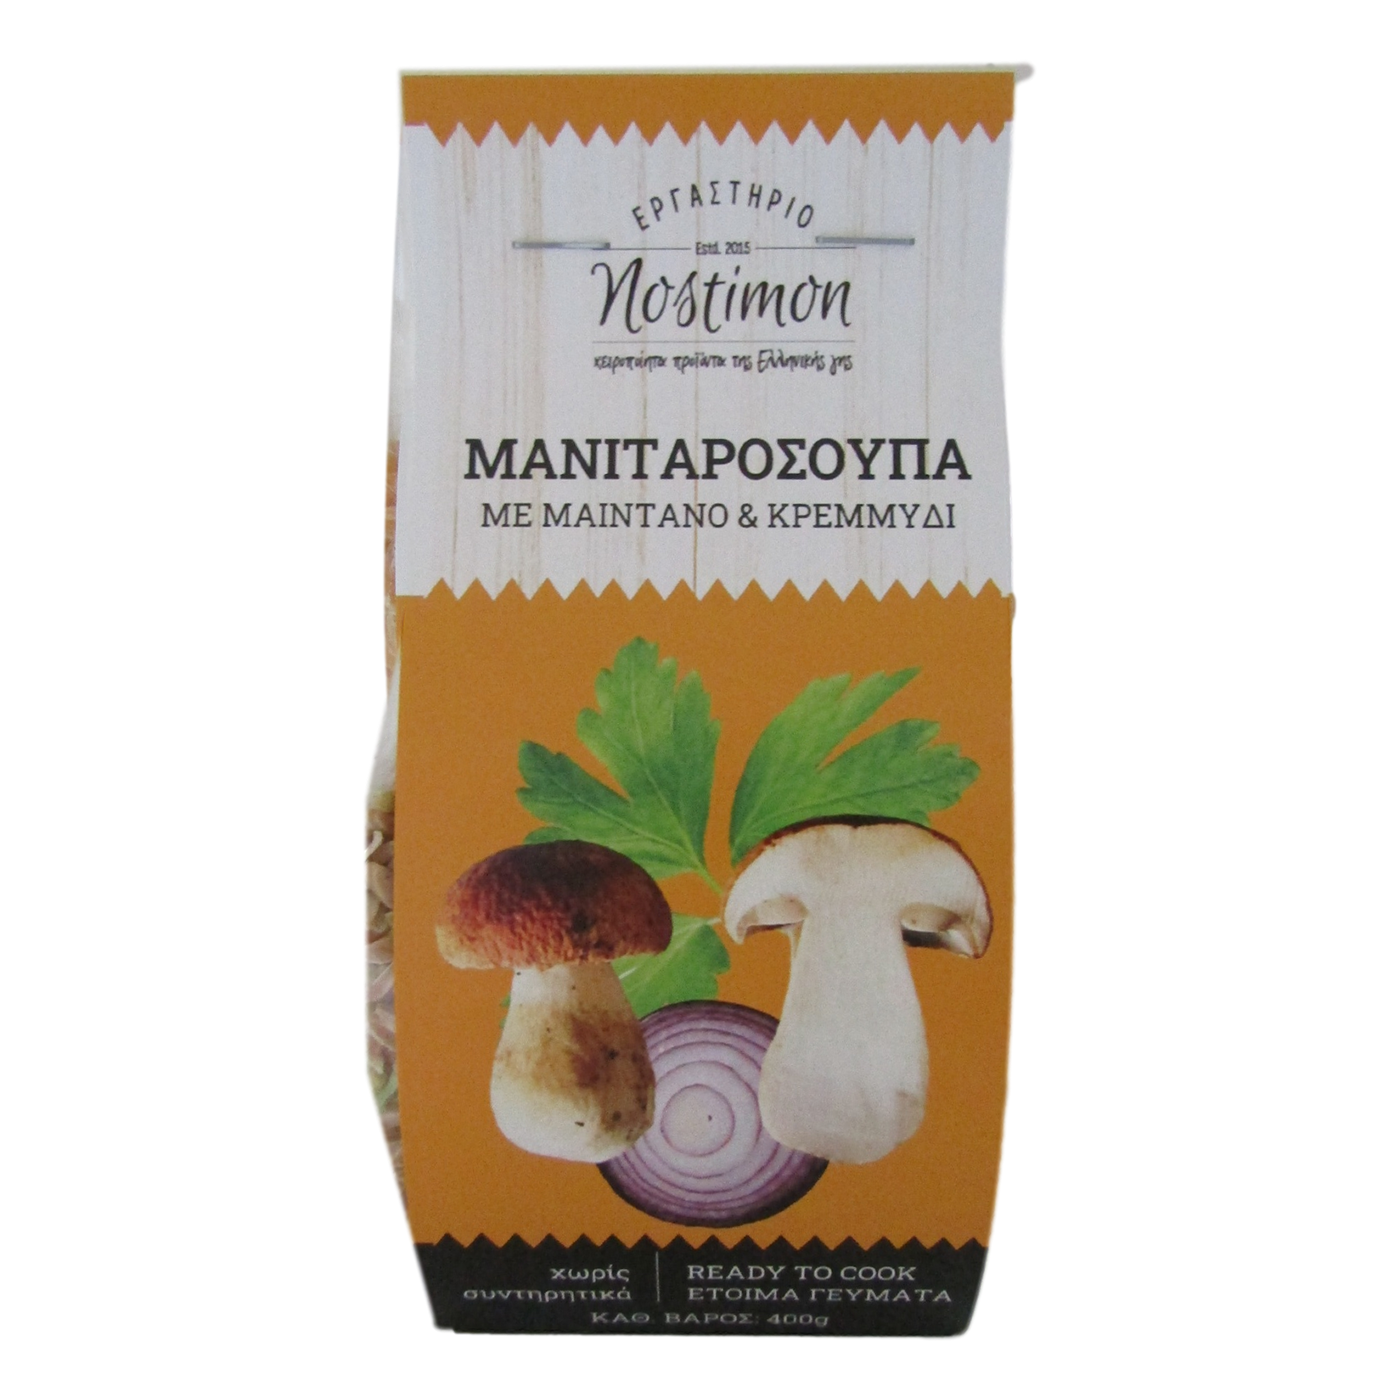 Μανιταρόσουπα με  μαϊντανό & κρεμμύδι " nostimon" 400 g.